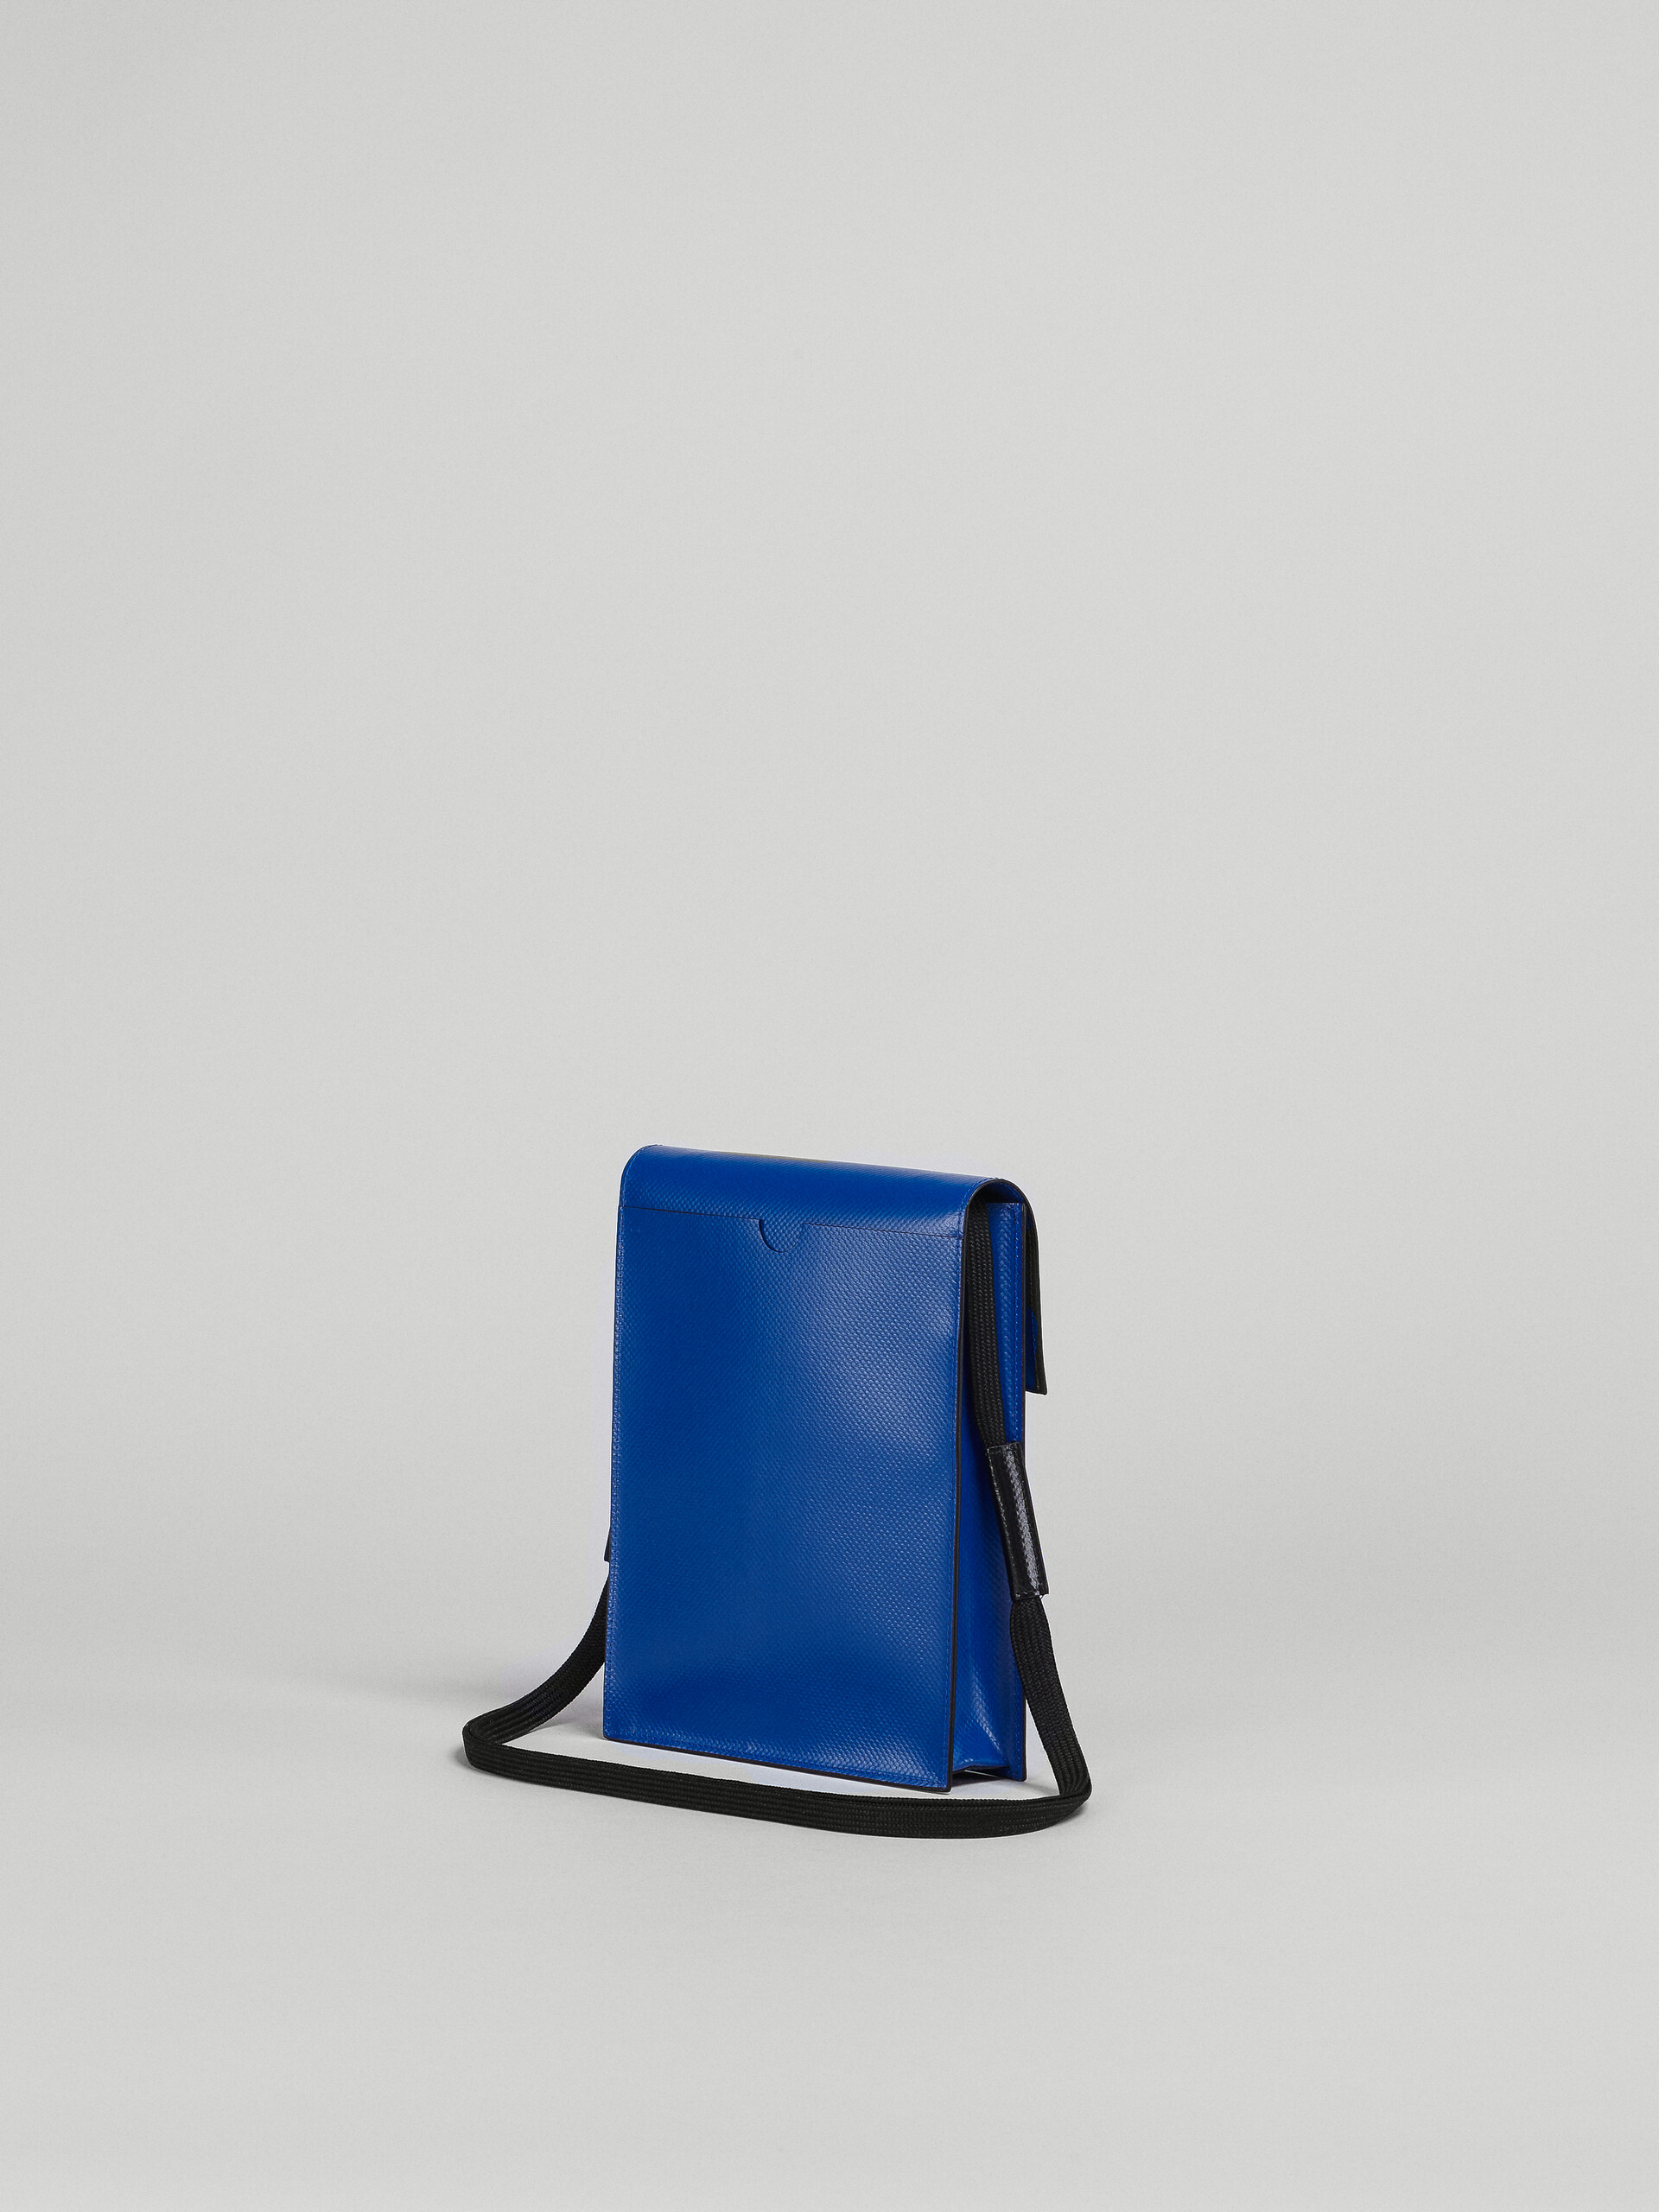 Black and blue PVC TRIBECA messenger bag - Shoulder Bag - Image 2